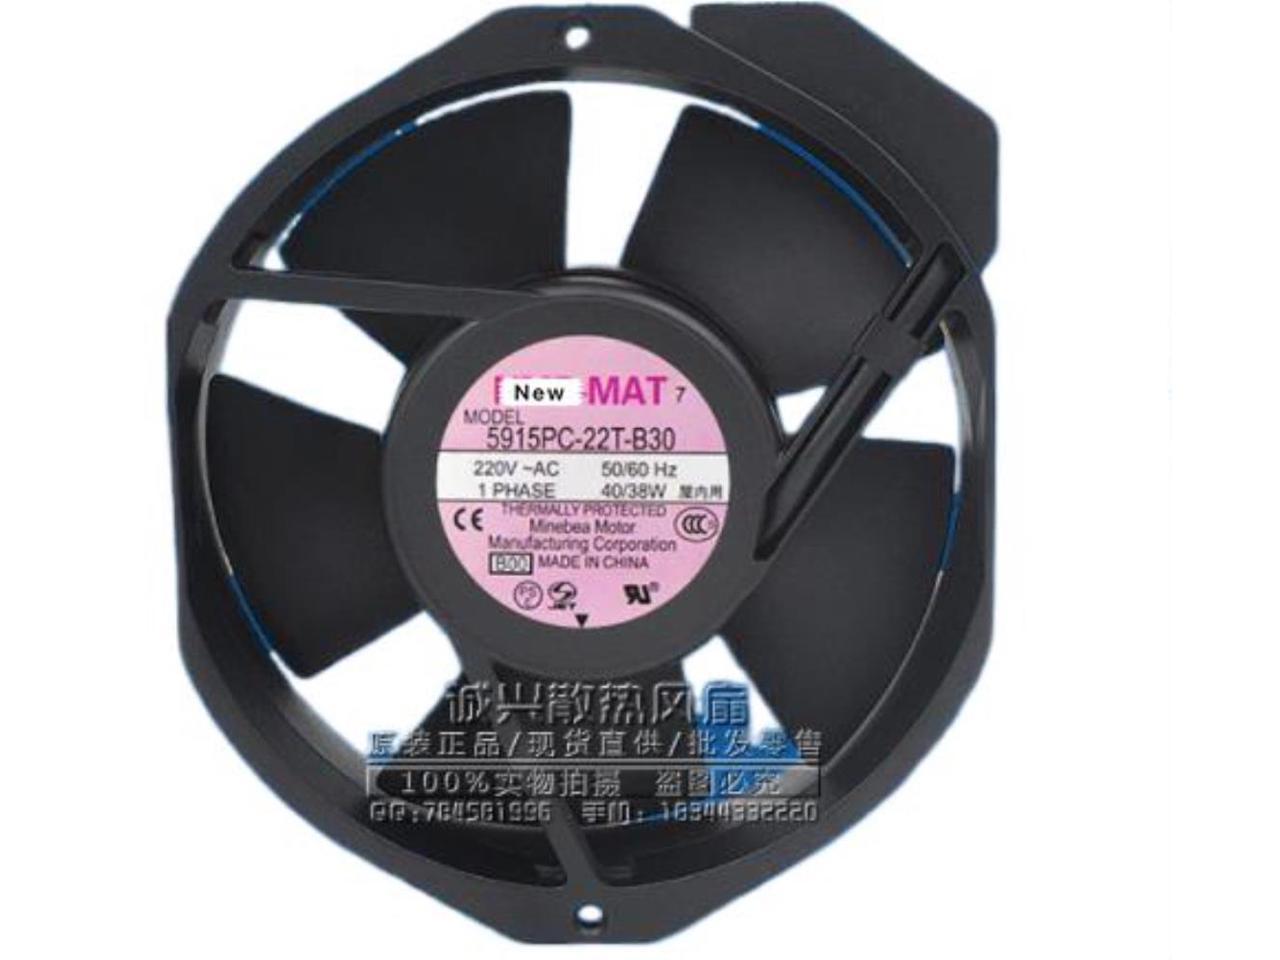 NMB 5915PC-22T-B30 fan 172*38mm AC 220V 40/38W Cooling Fan #M2350 QL 